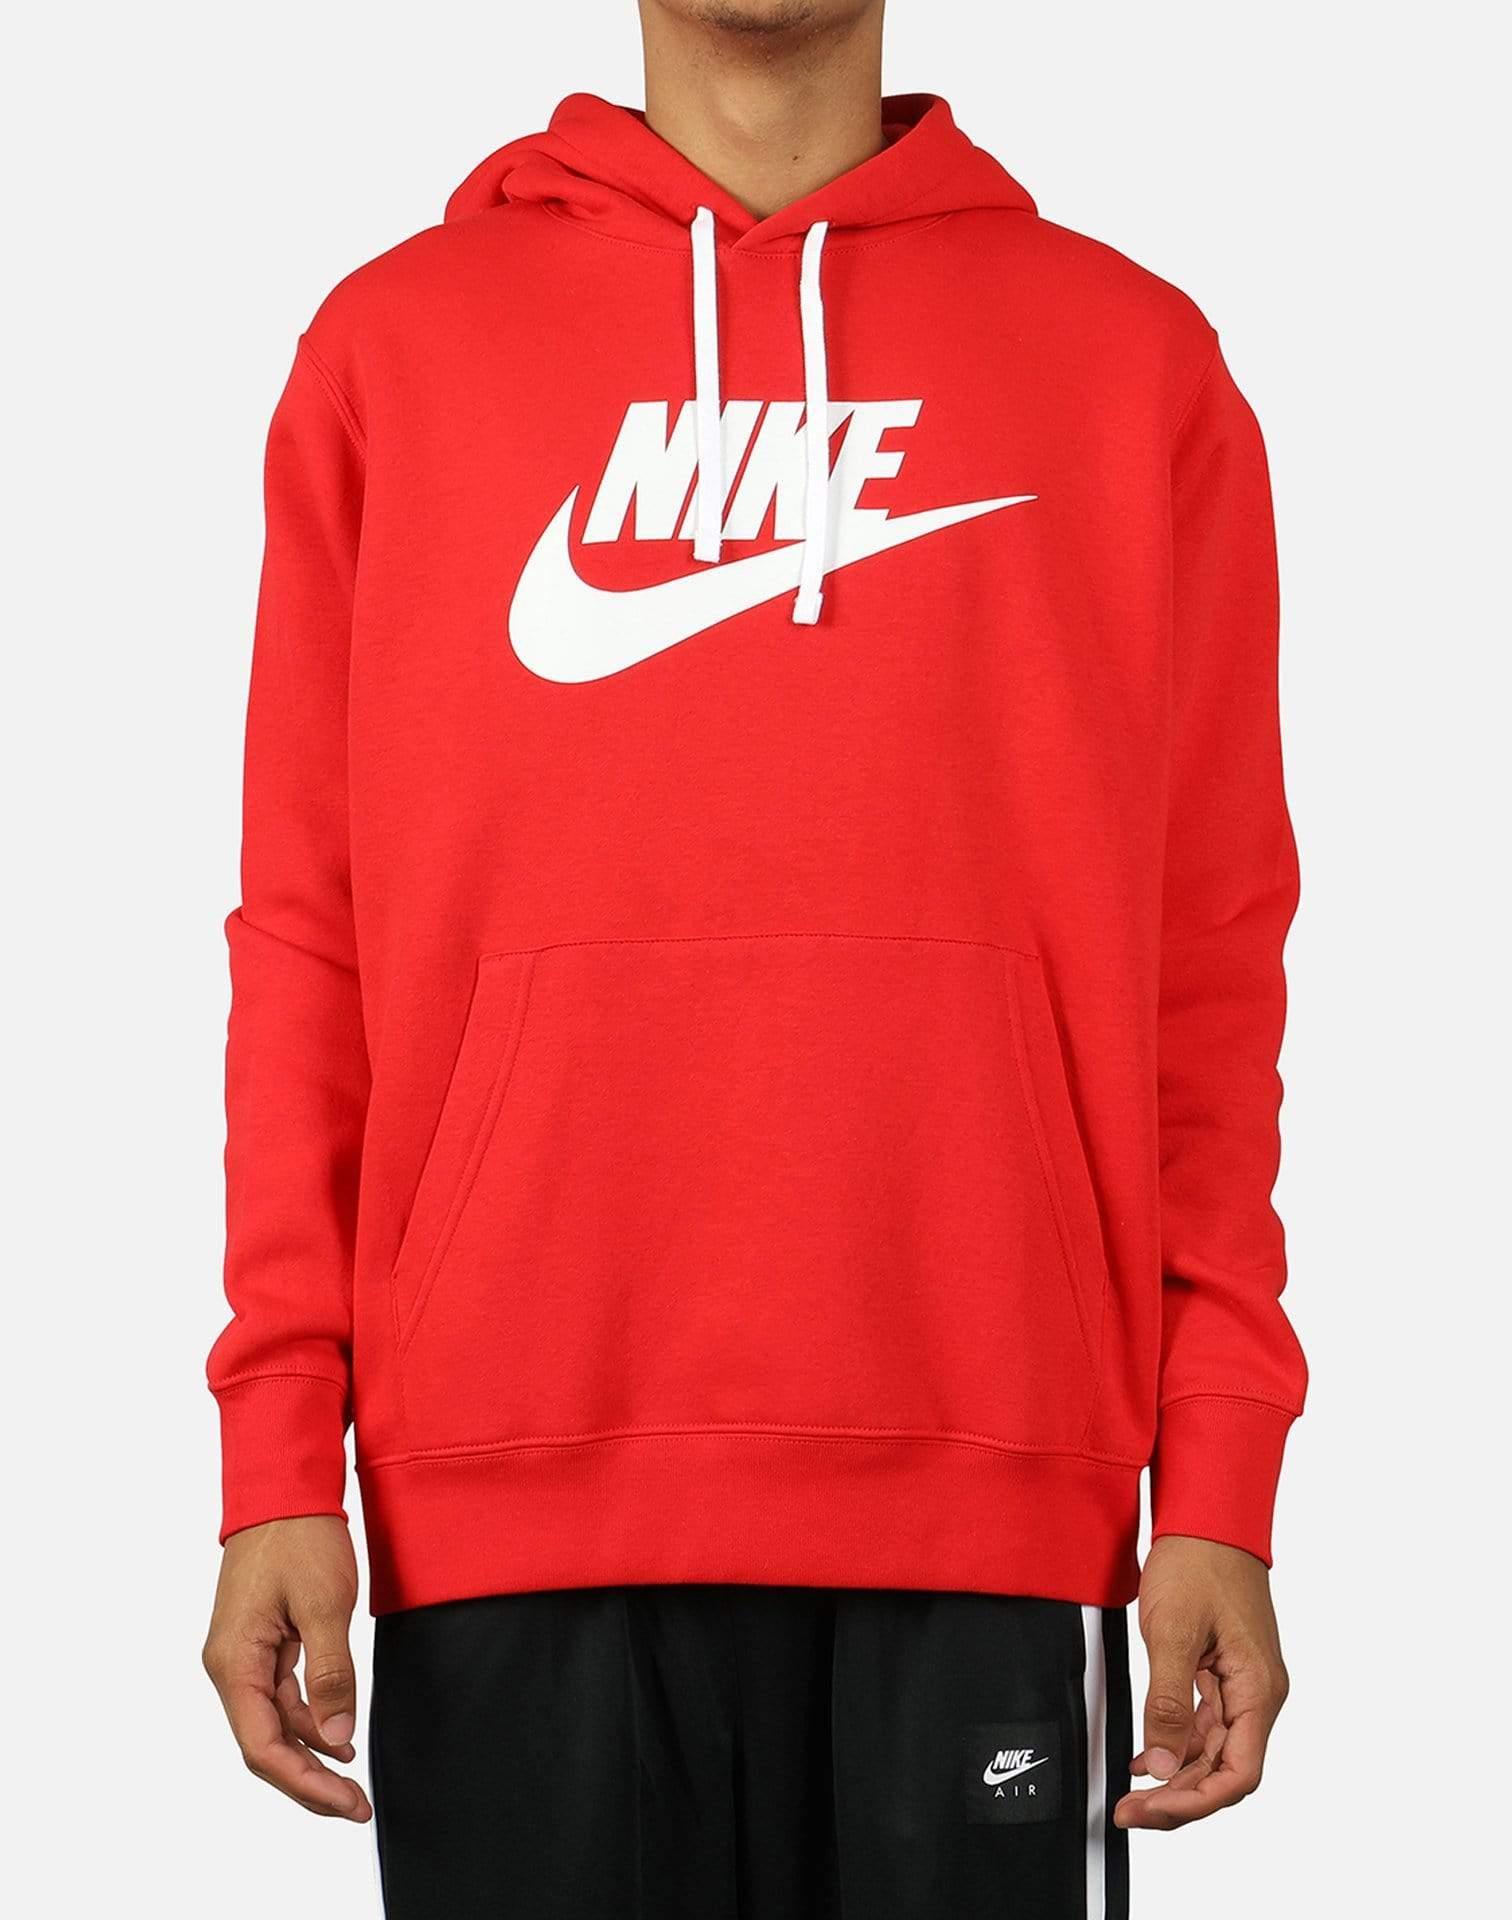 nike red logo hoodie